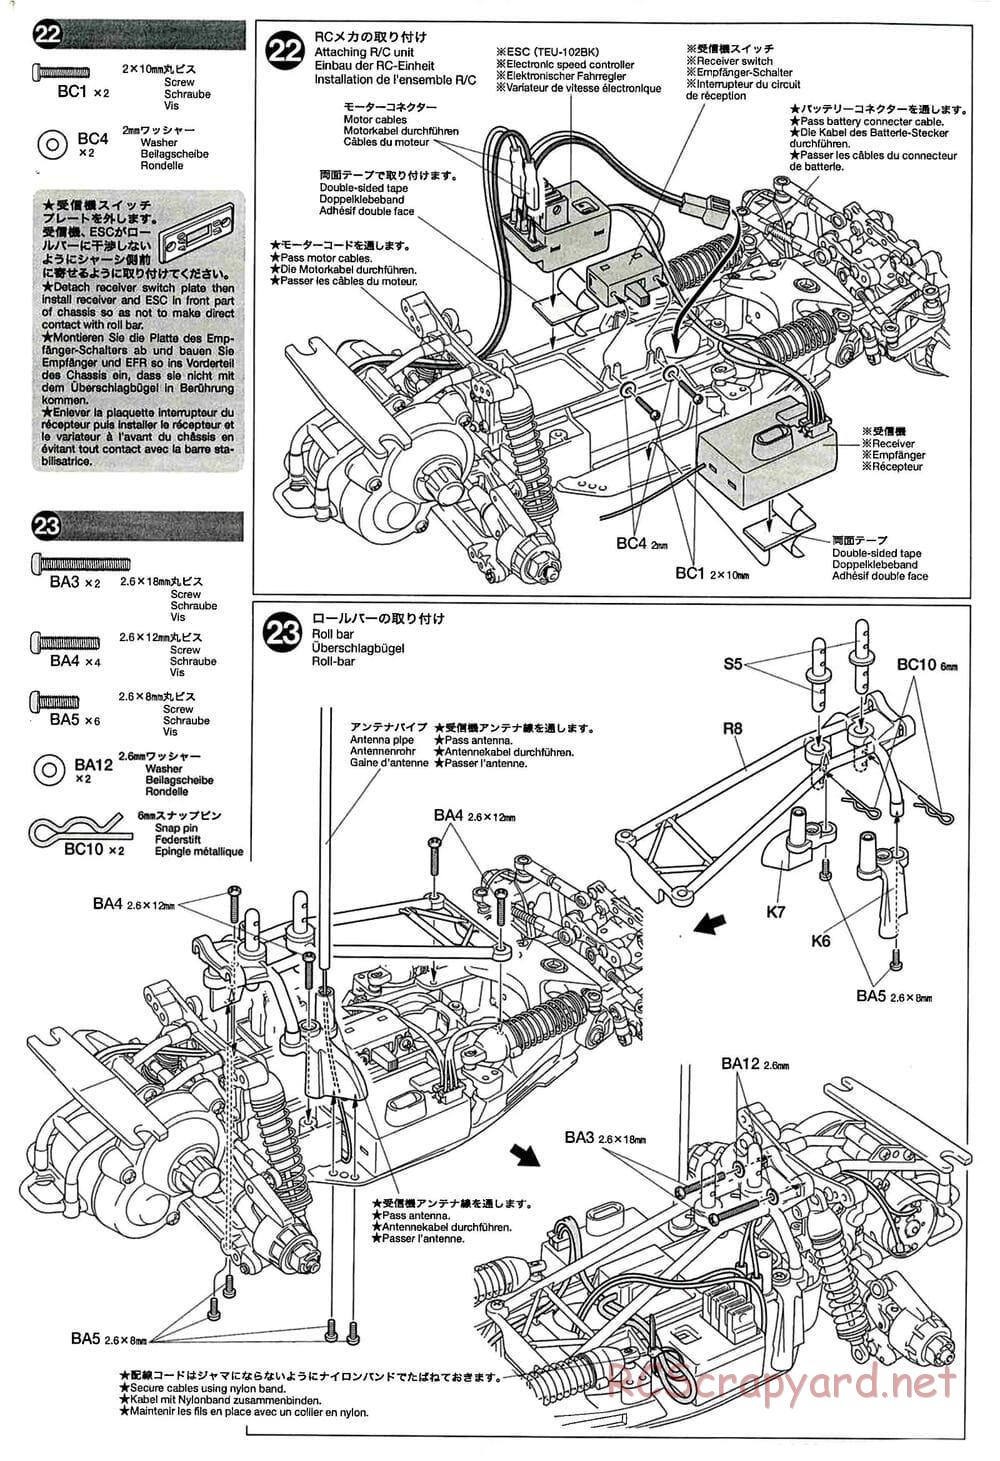 Tamiya - GT-01 Chassis - Manual - Page 14